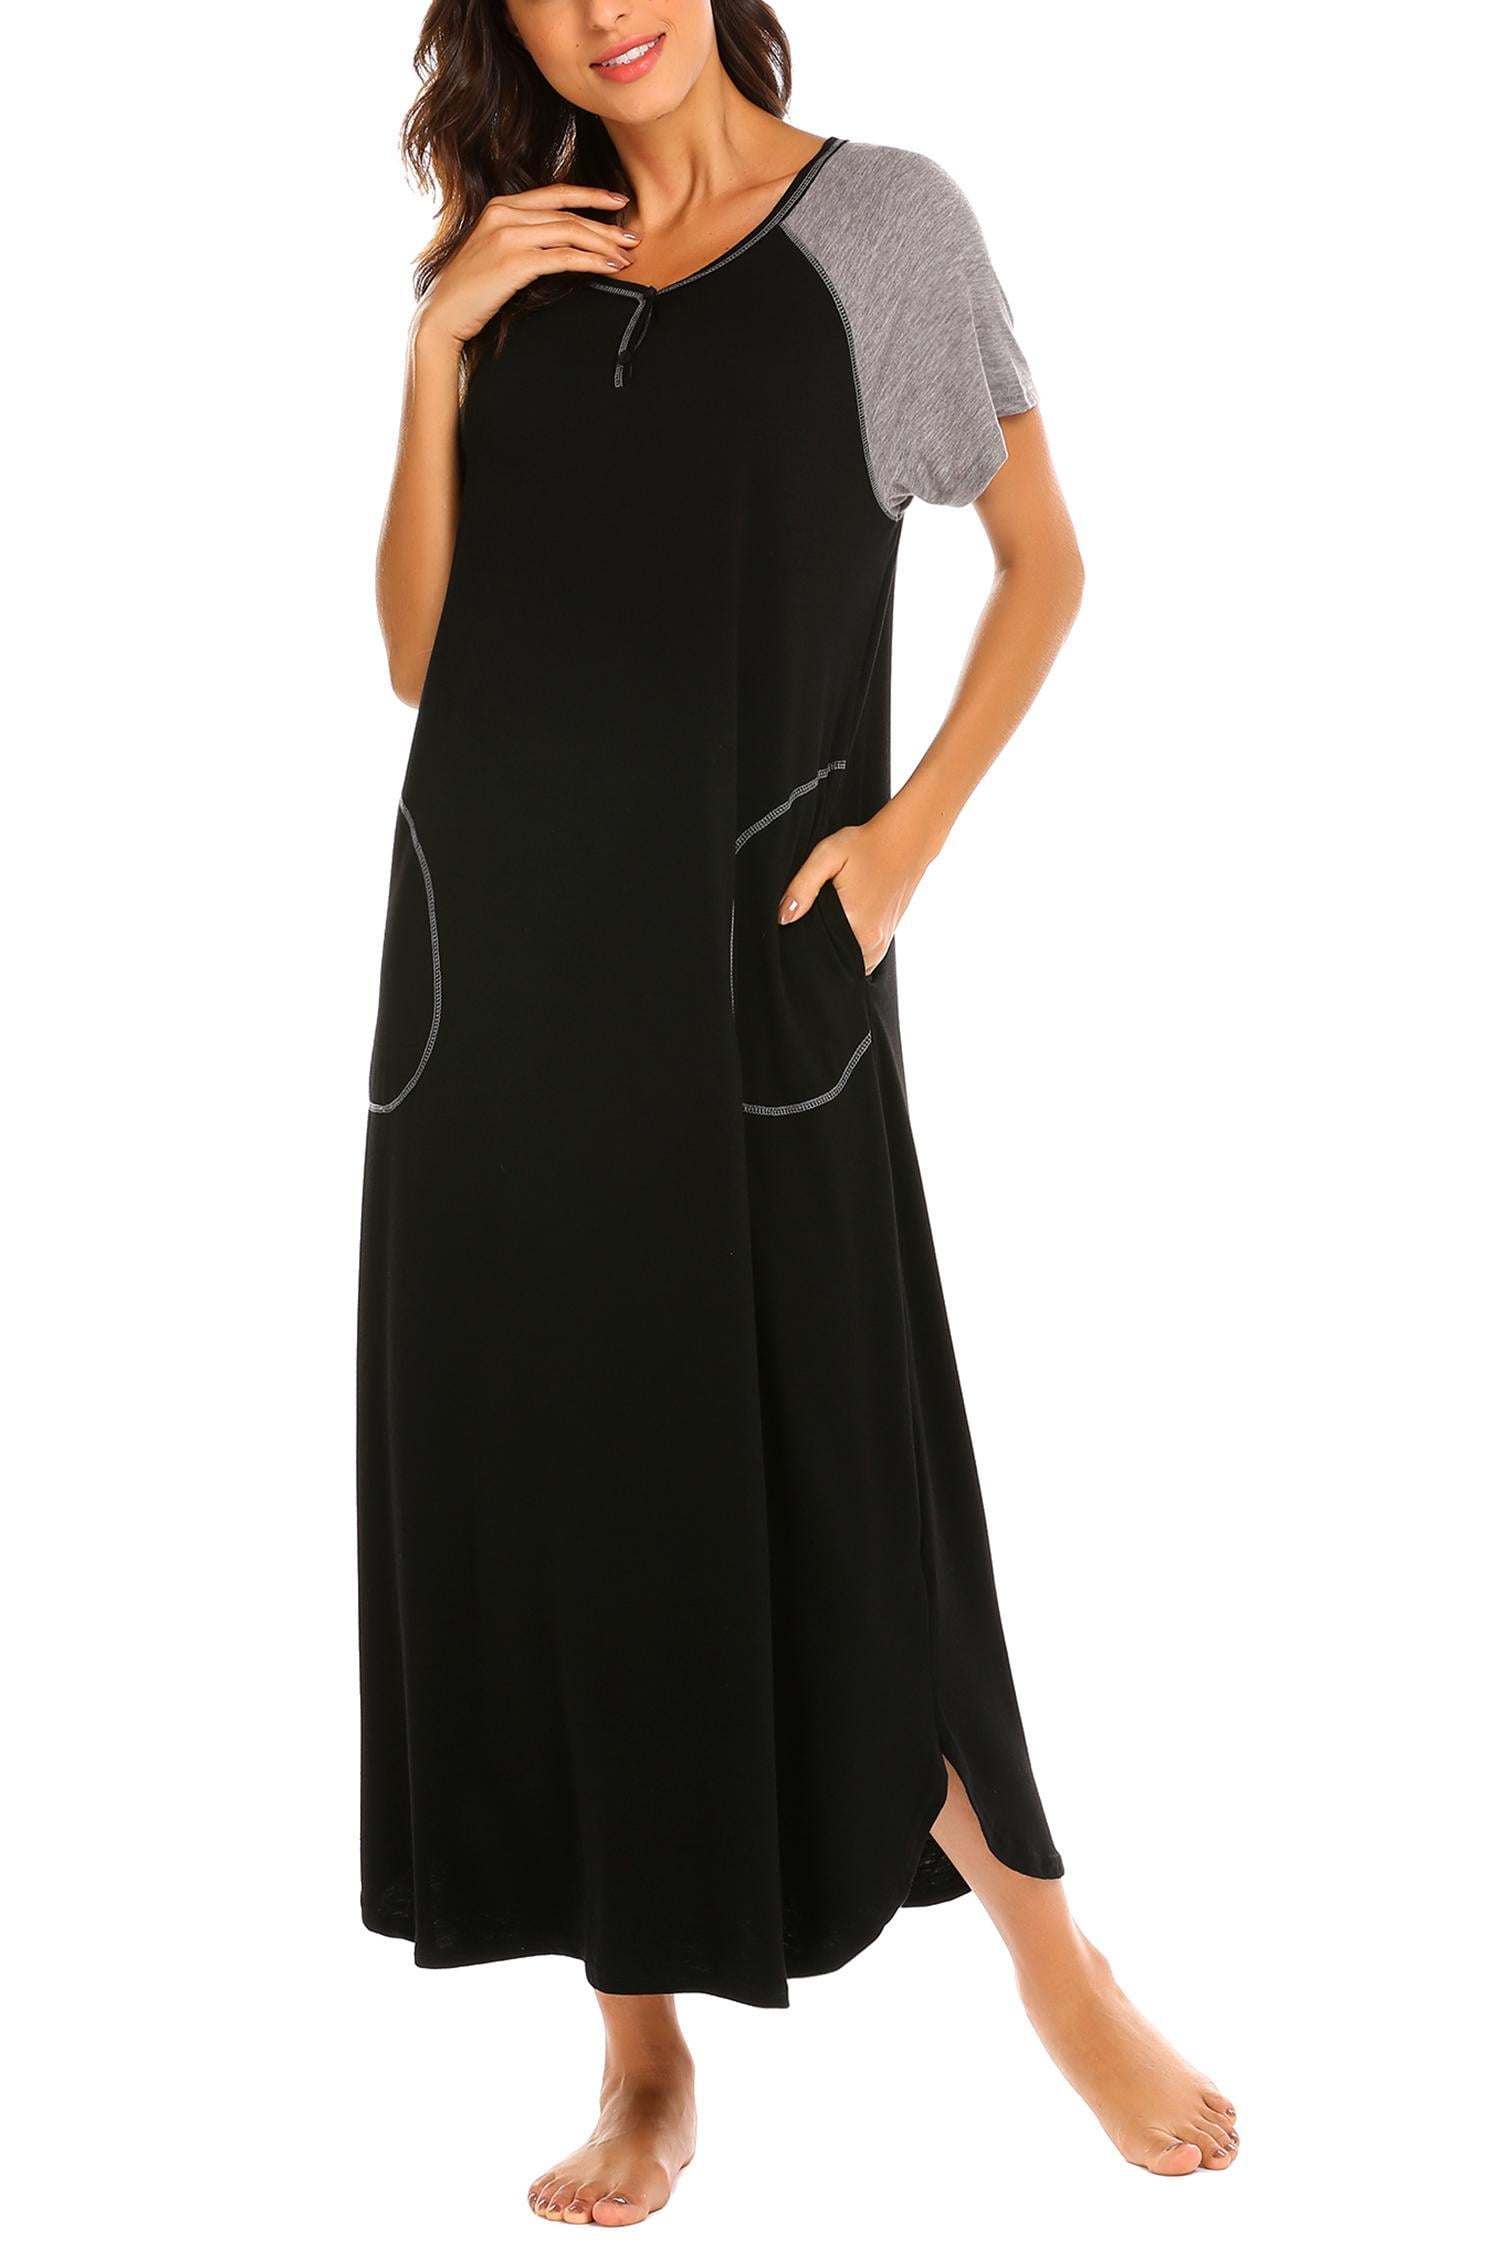 KISSGAL Long Nightgown for Women V-Neck Short Sleeve Patchwork Full ...